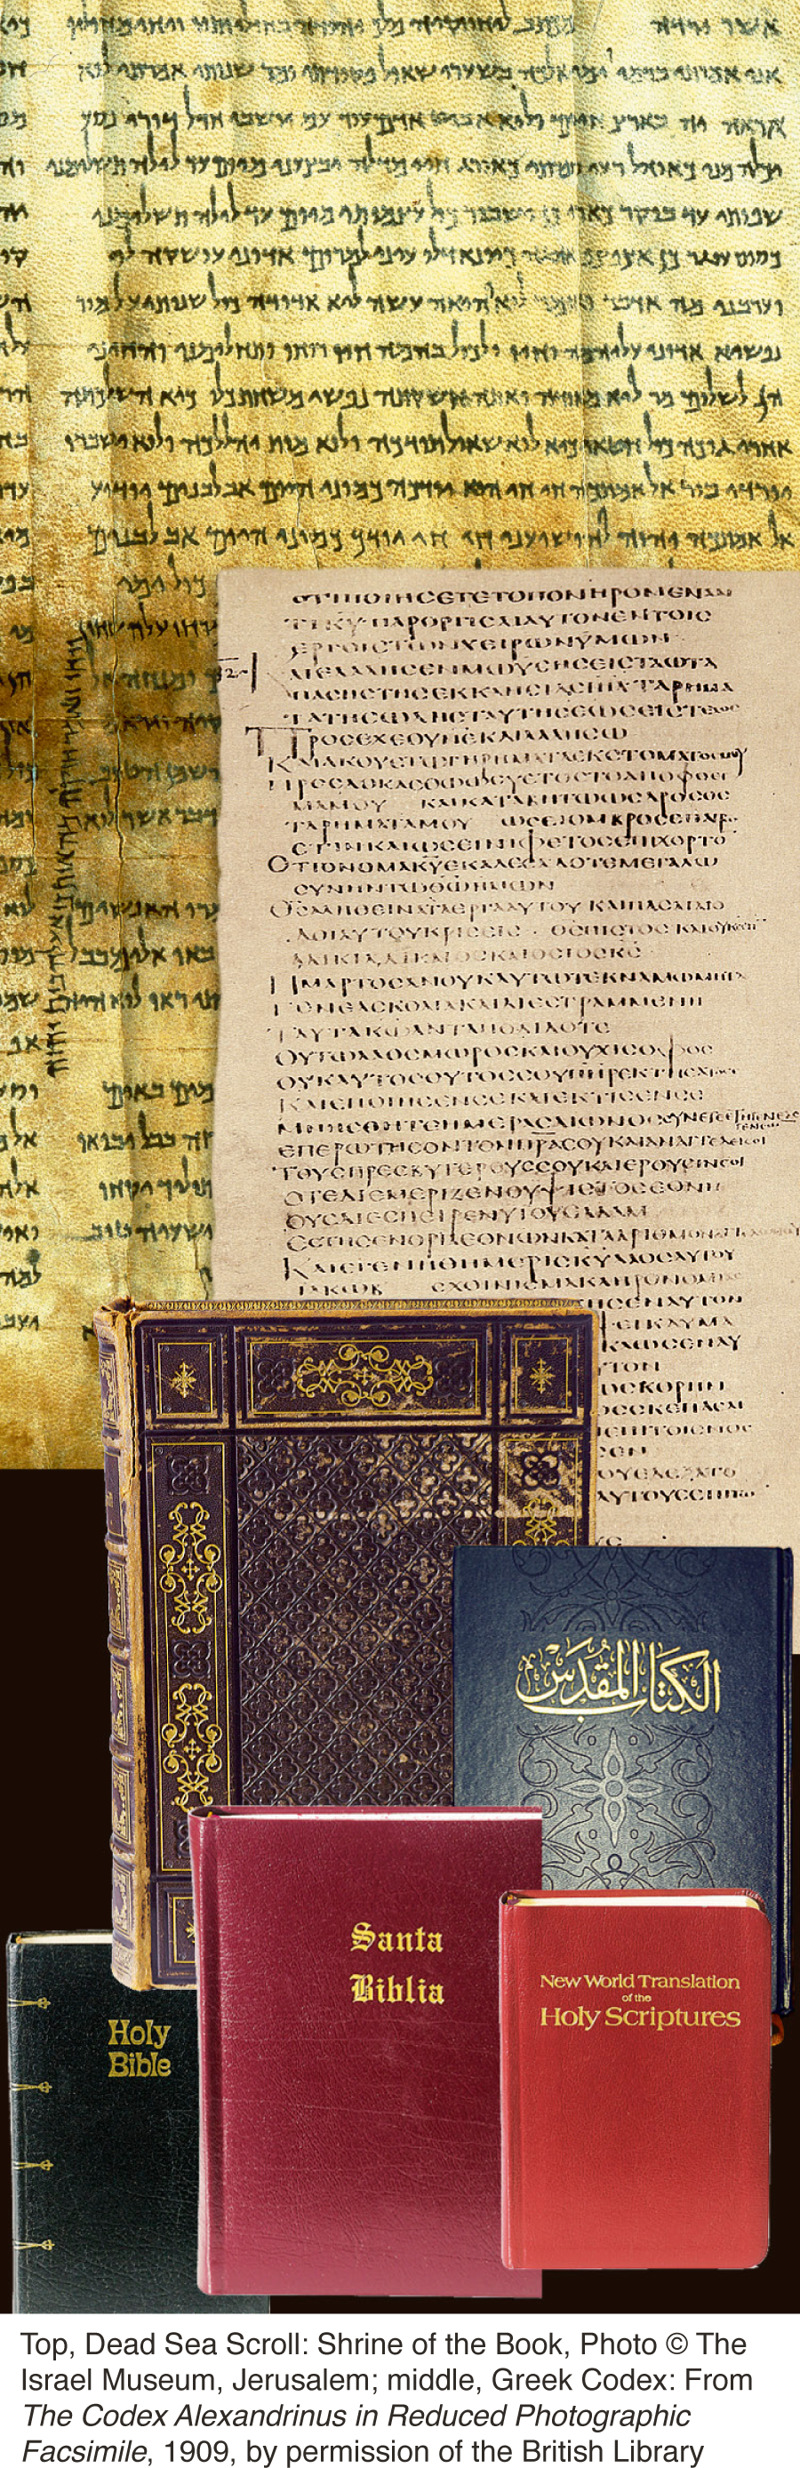 Varios ejemplares de la Biblia y manuscritos antiguos